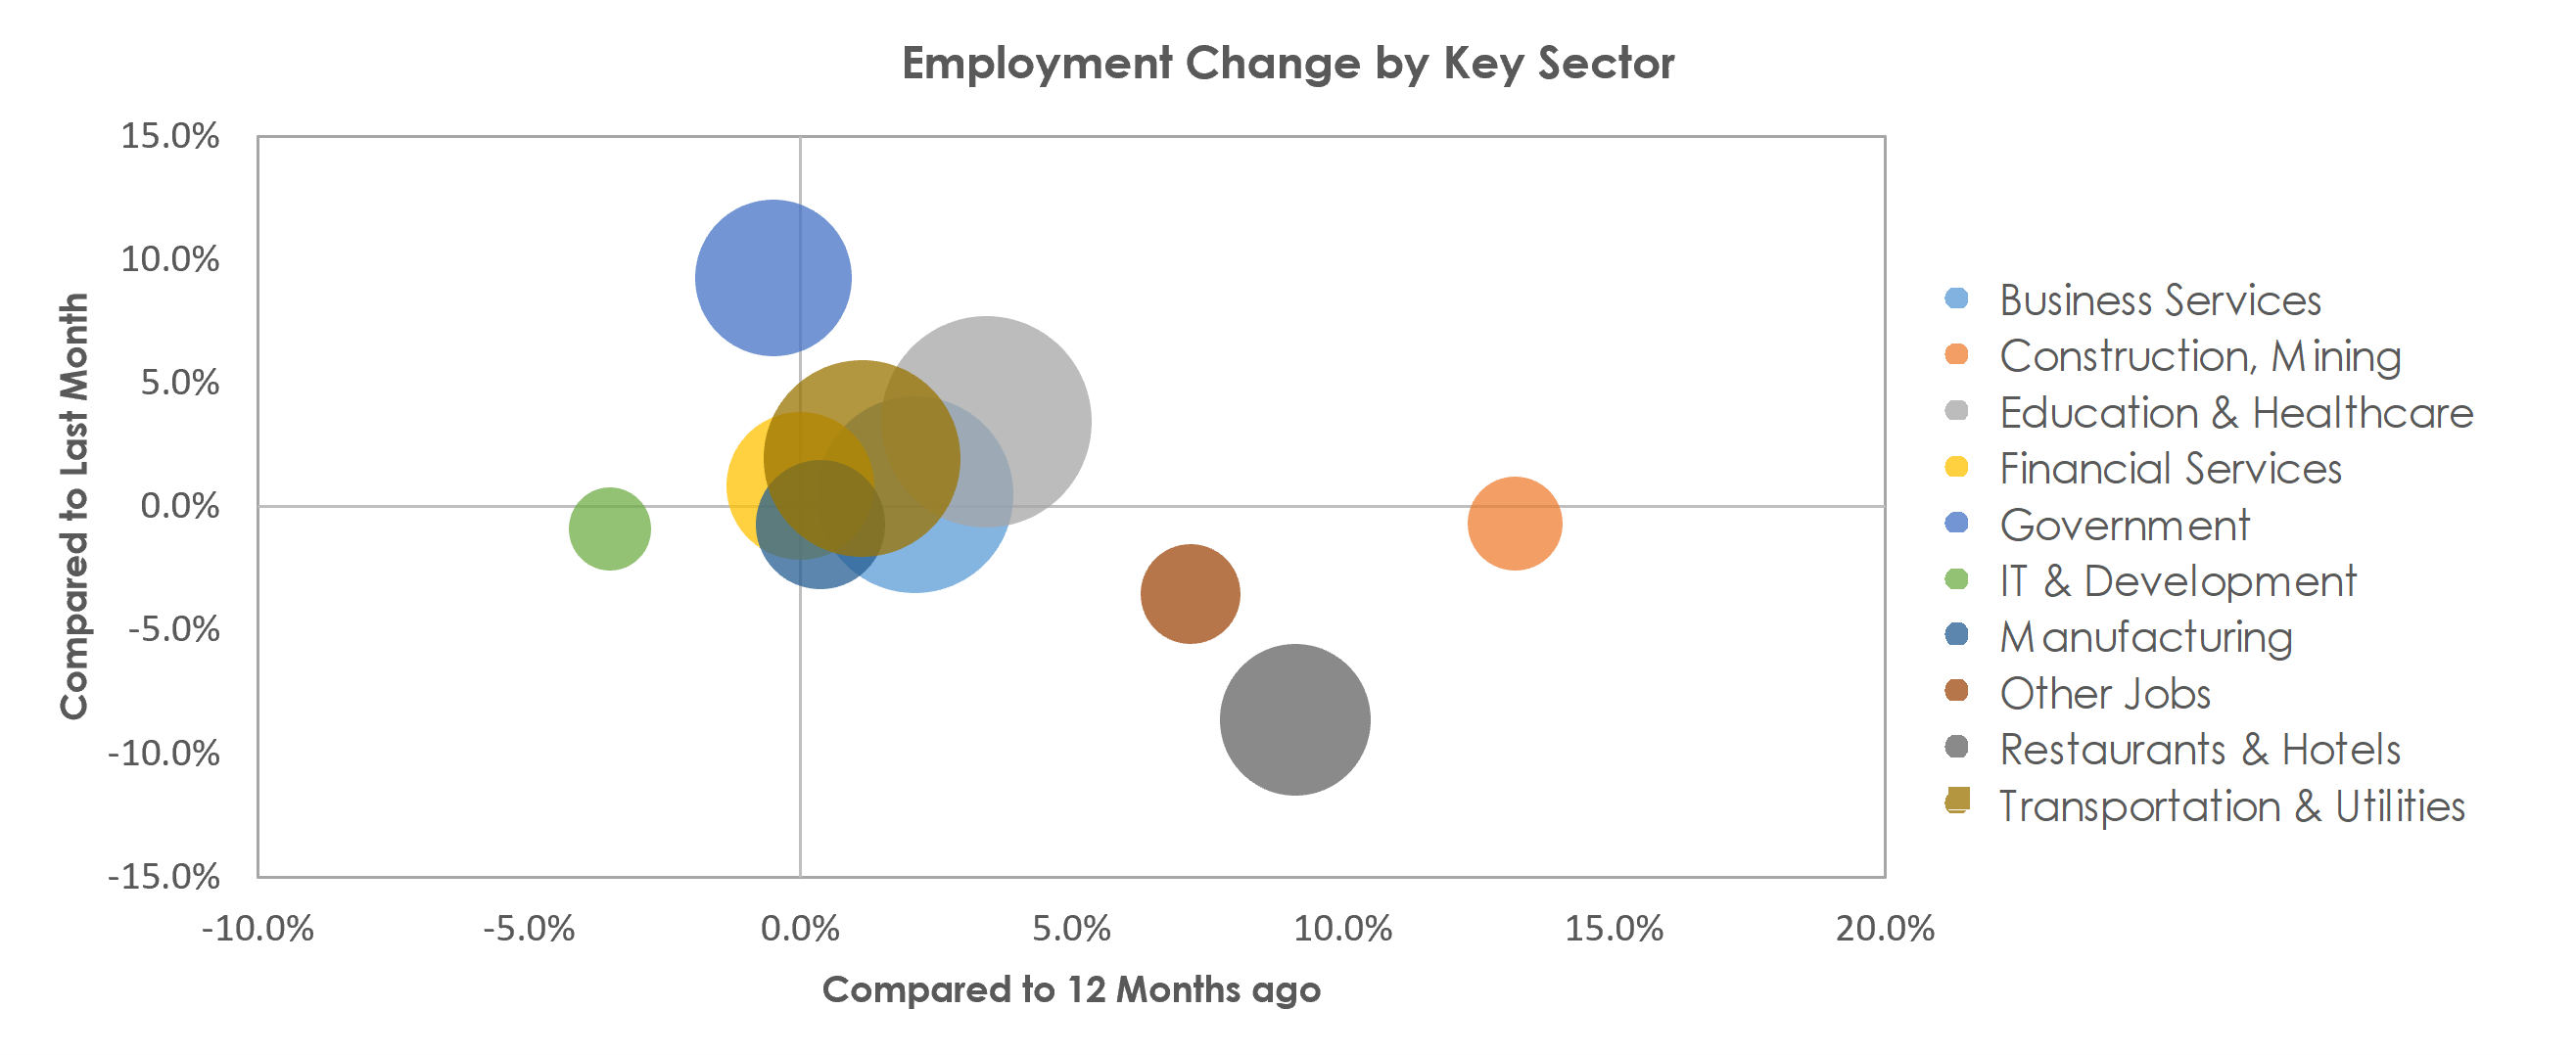 Bridgeport-Stamford-Norwalk, CT Unemployment by Industry September 2021